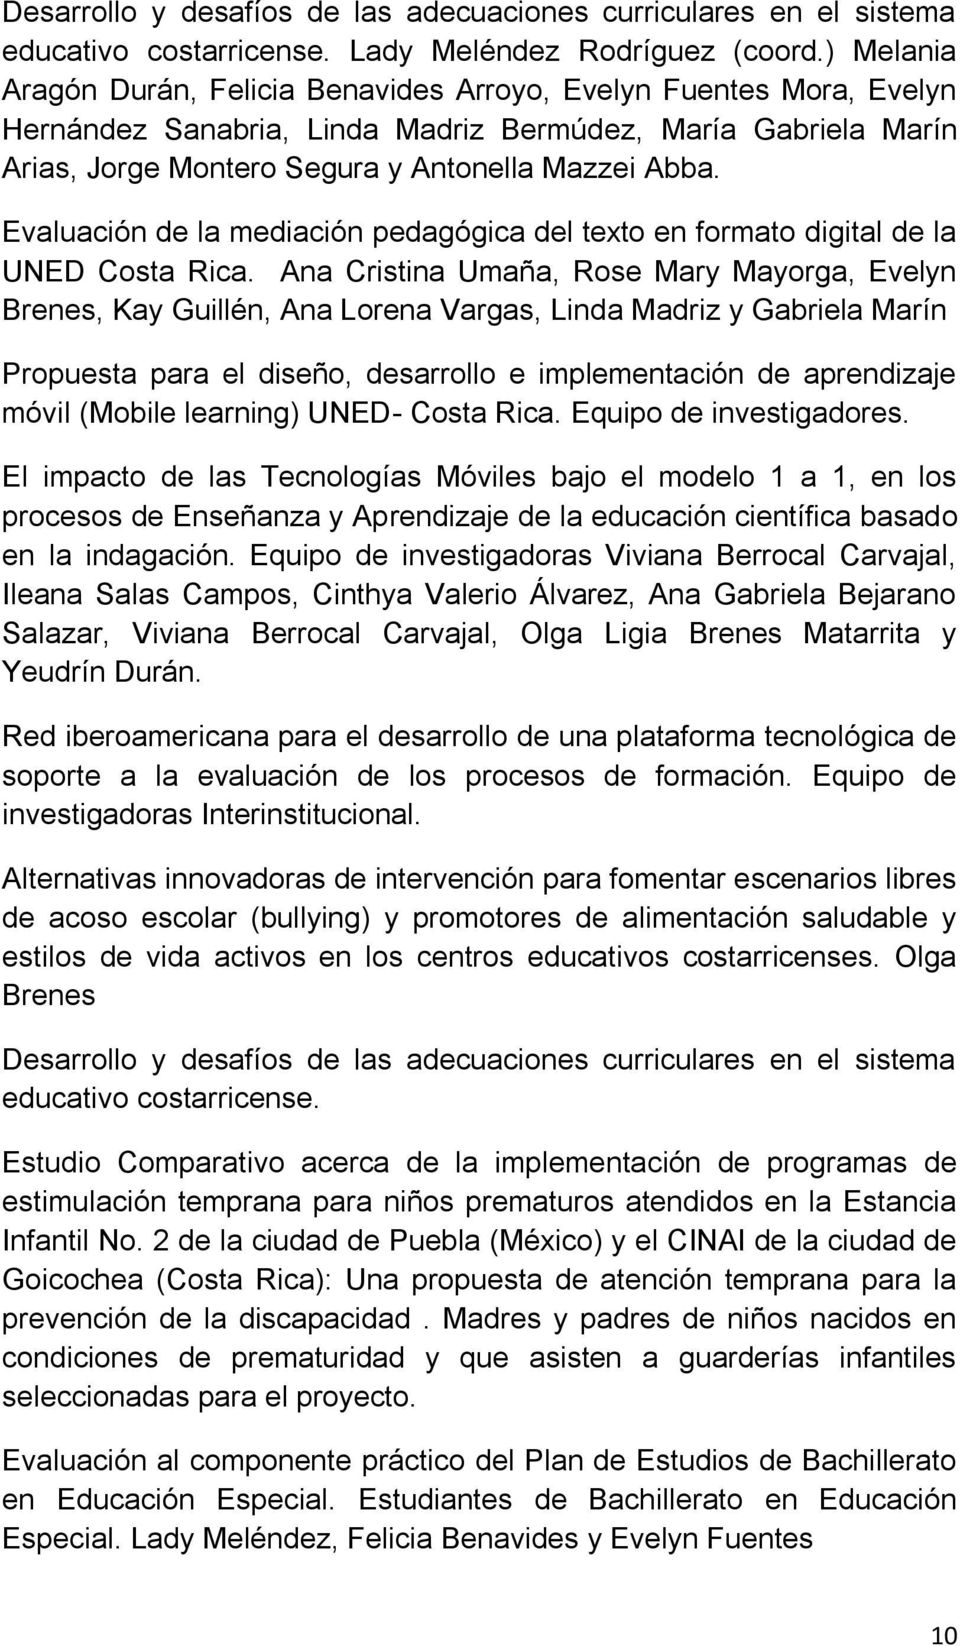 Evaluación de la mediación pedagógica del texto en formato digital de la UNED Costa Rica.